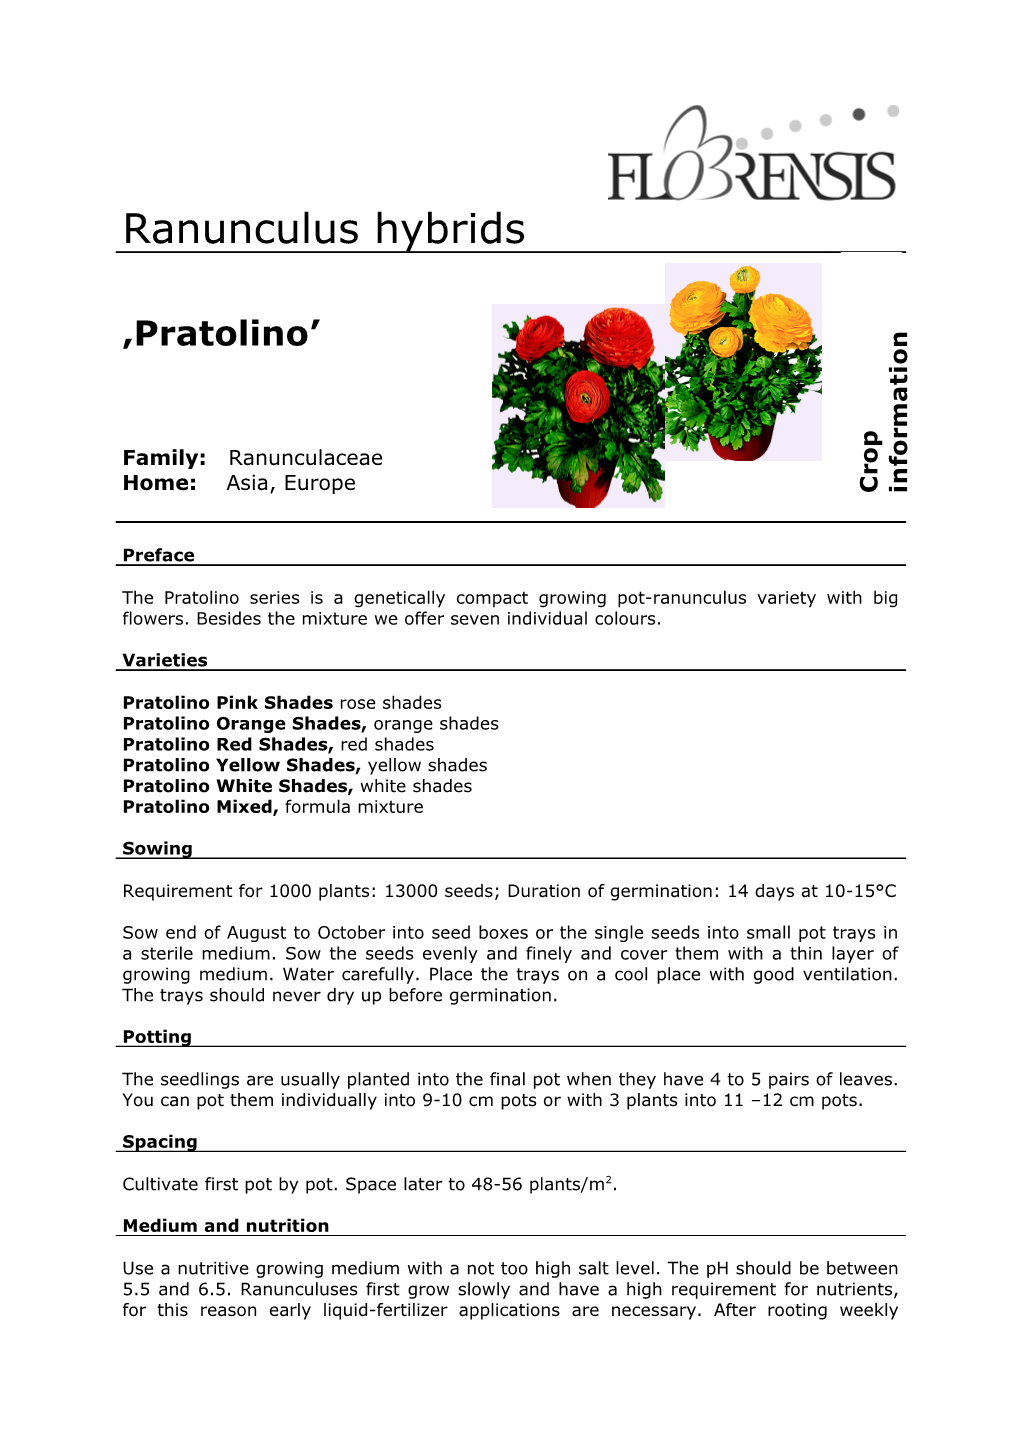 Ranunculus Hybrids